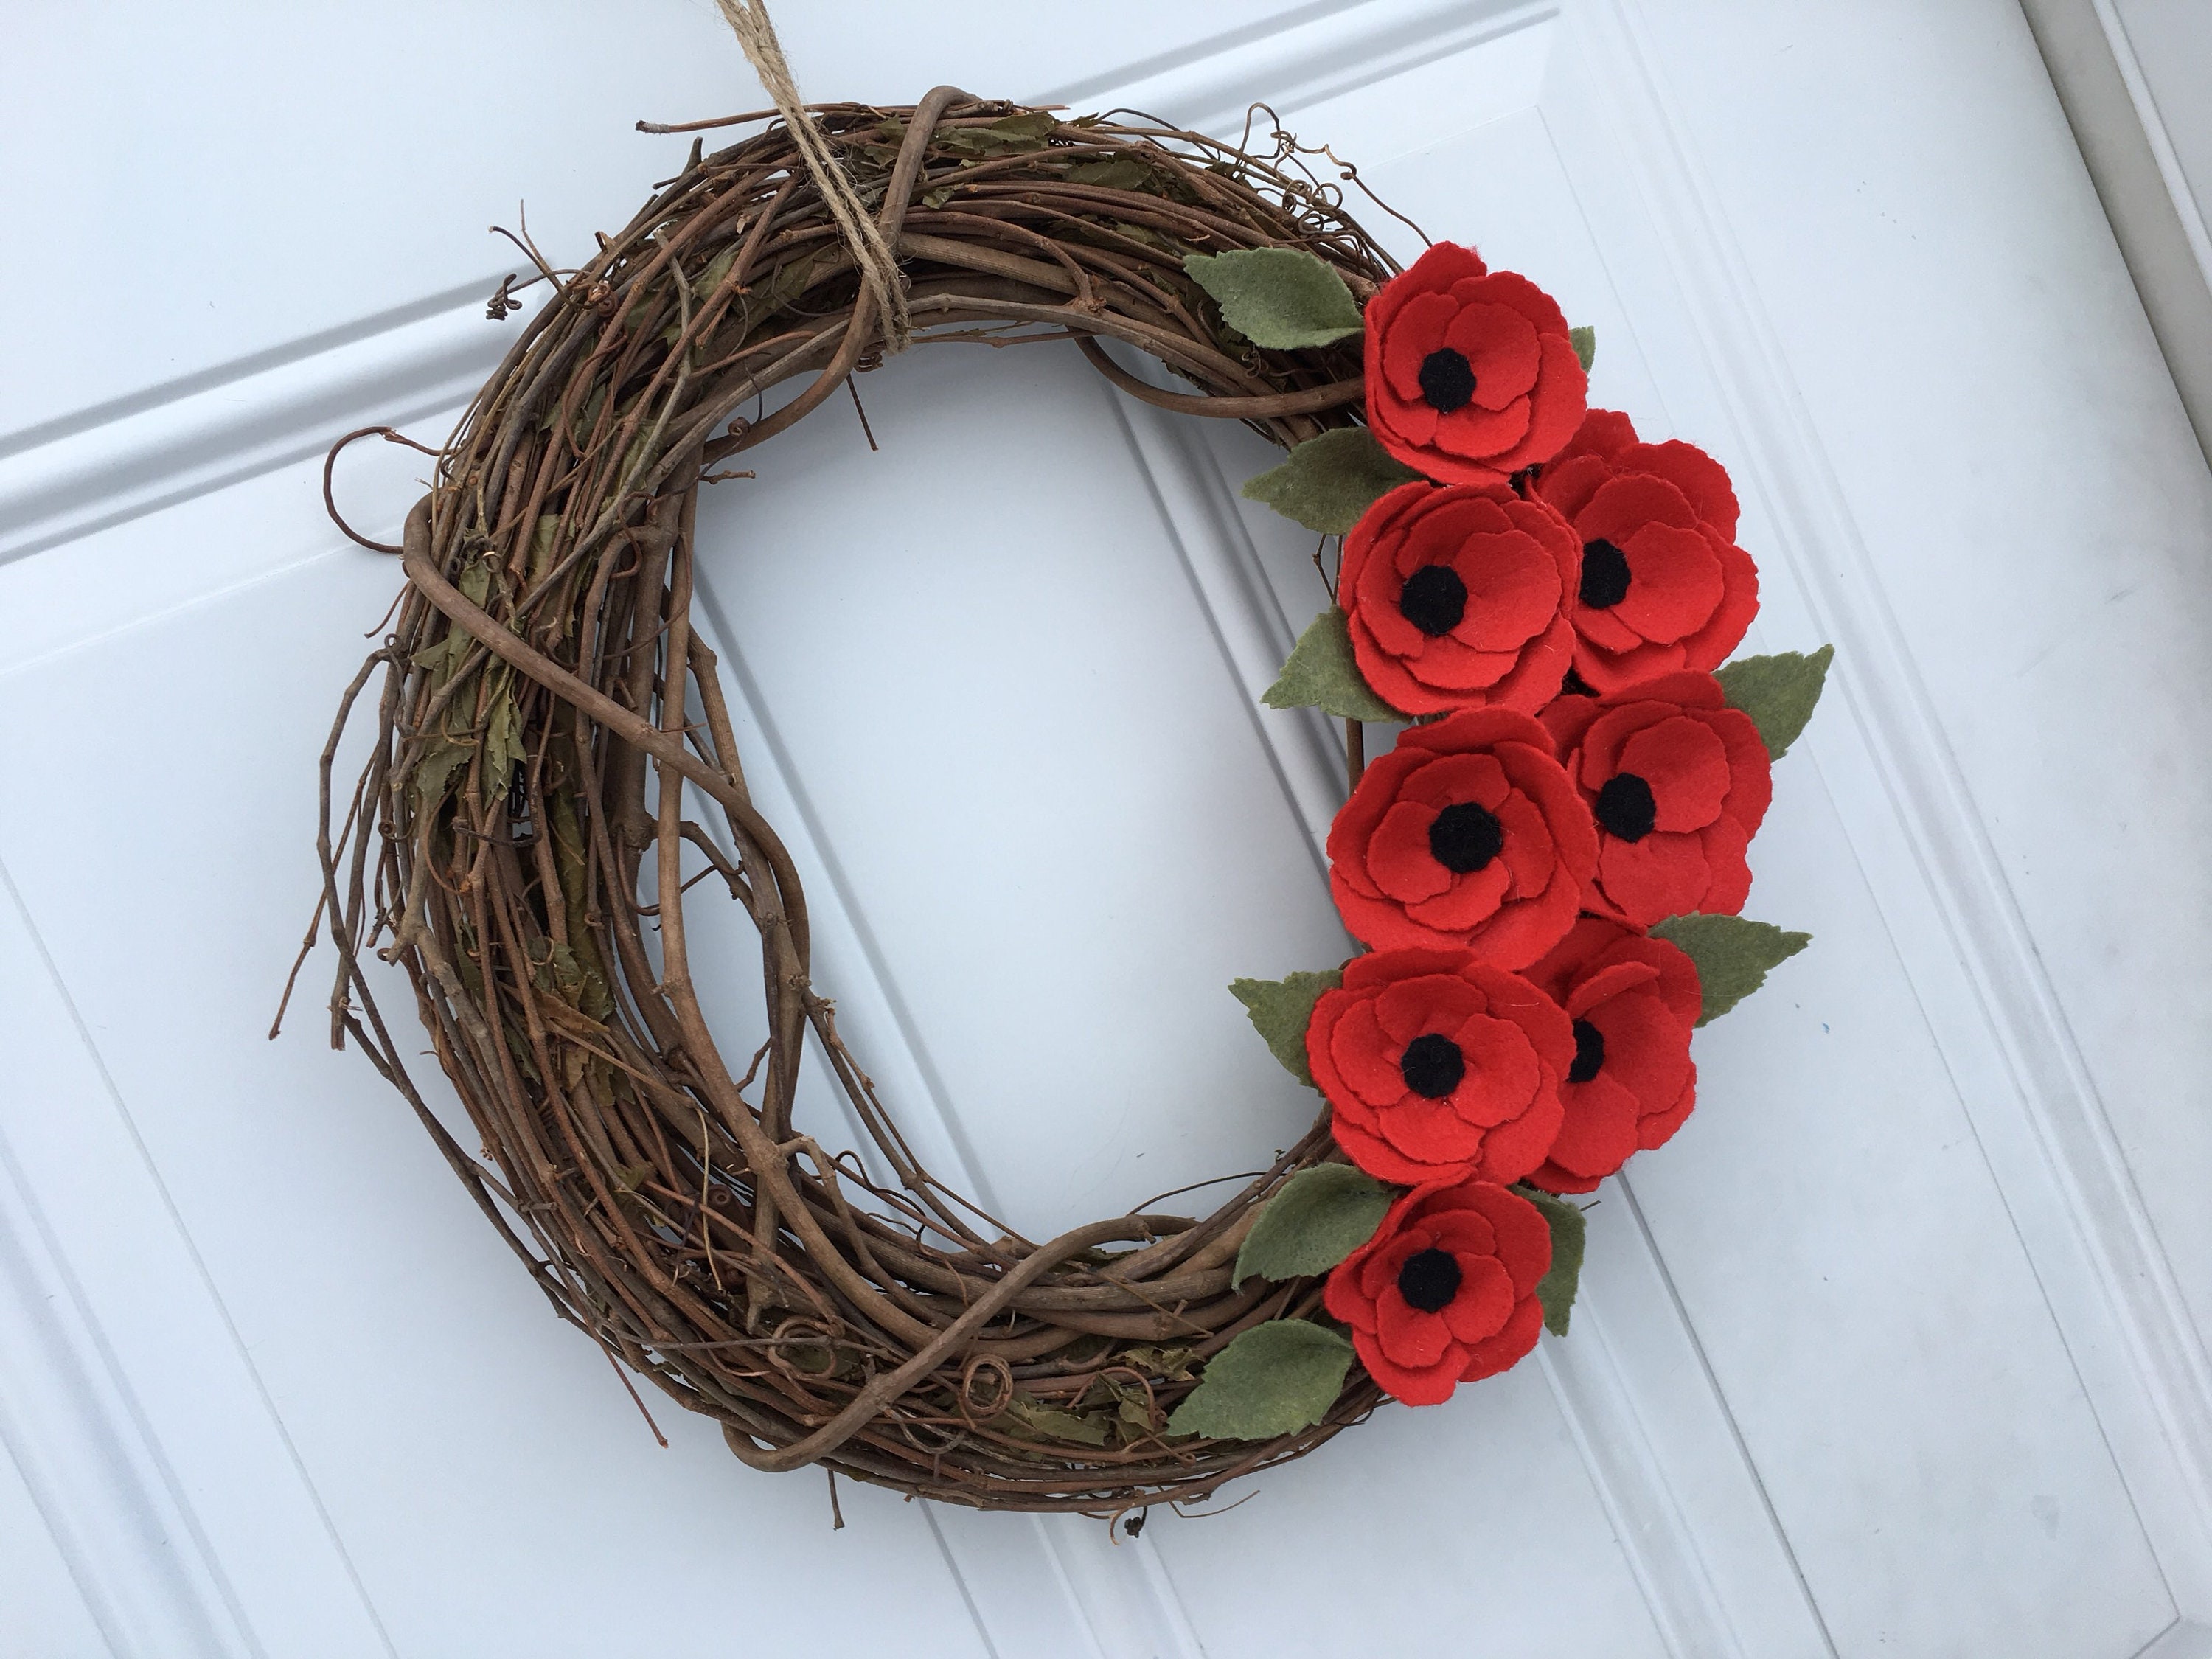 Handmade crochet 3d applique Poppy wreath wall hanging Remembrance Home Door hanger Memorial ANZAC Day decor.